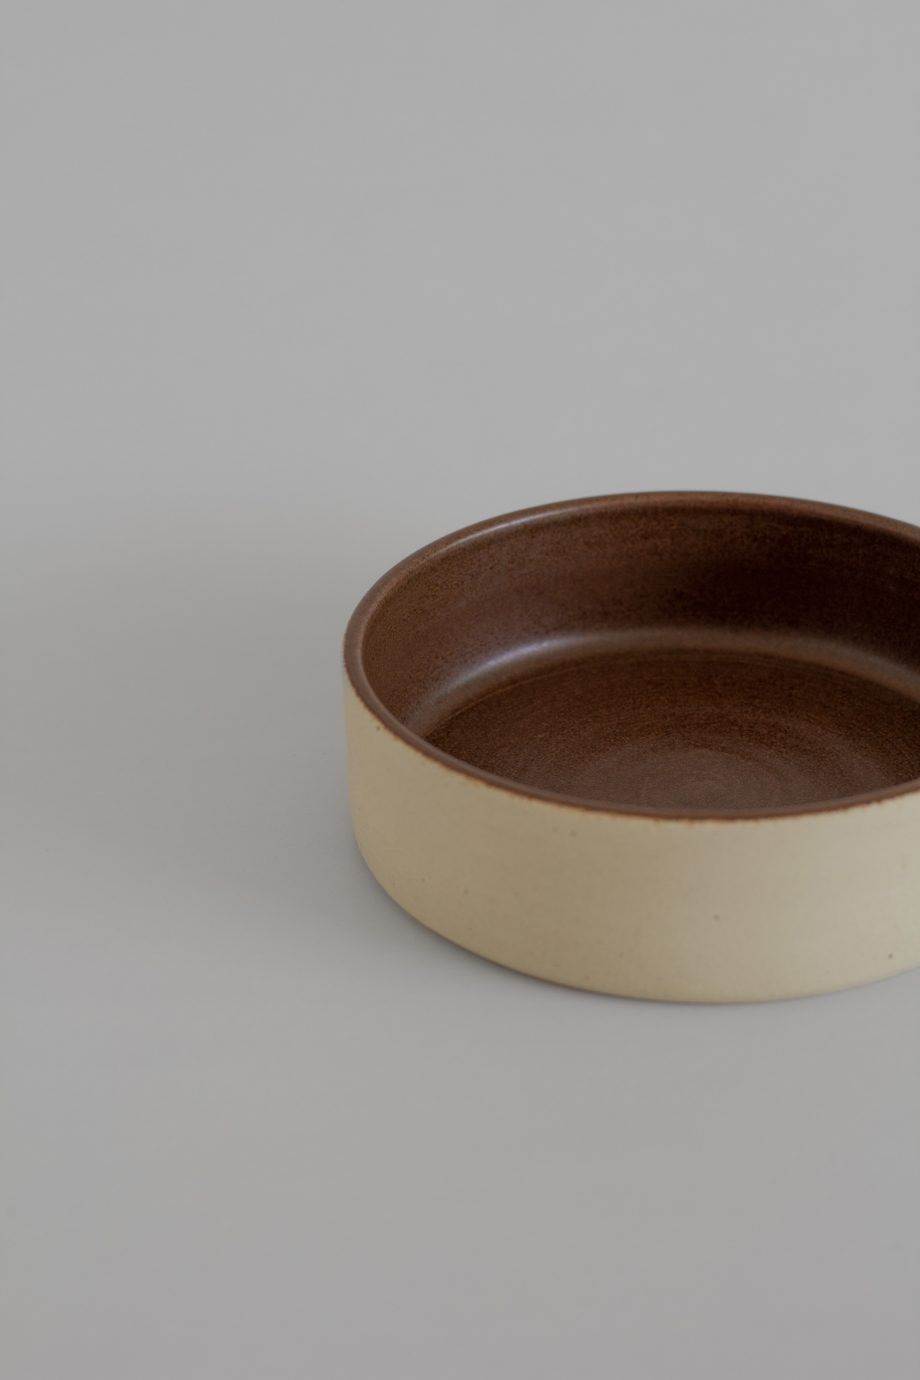 Bowl de cerâmica artesanal com interior vidrado castanho da marca de decoração portuguesa O Cactuu.